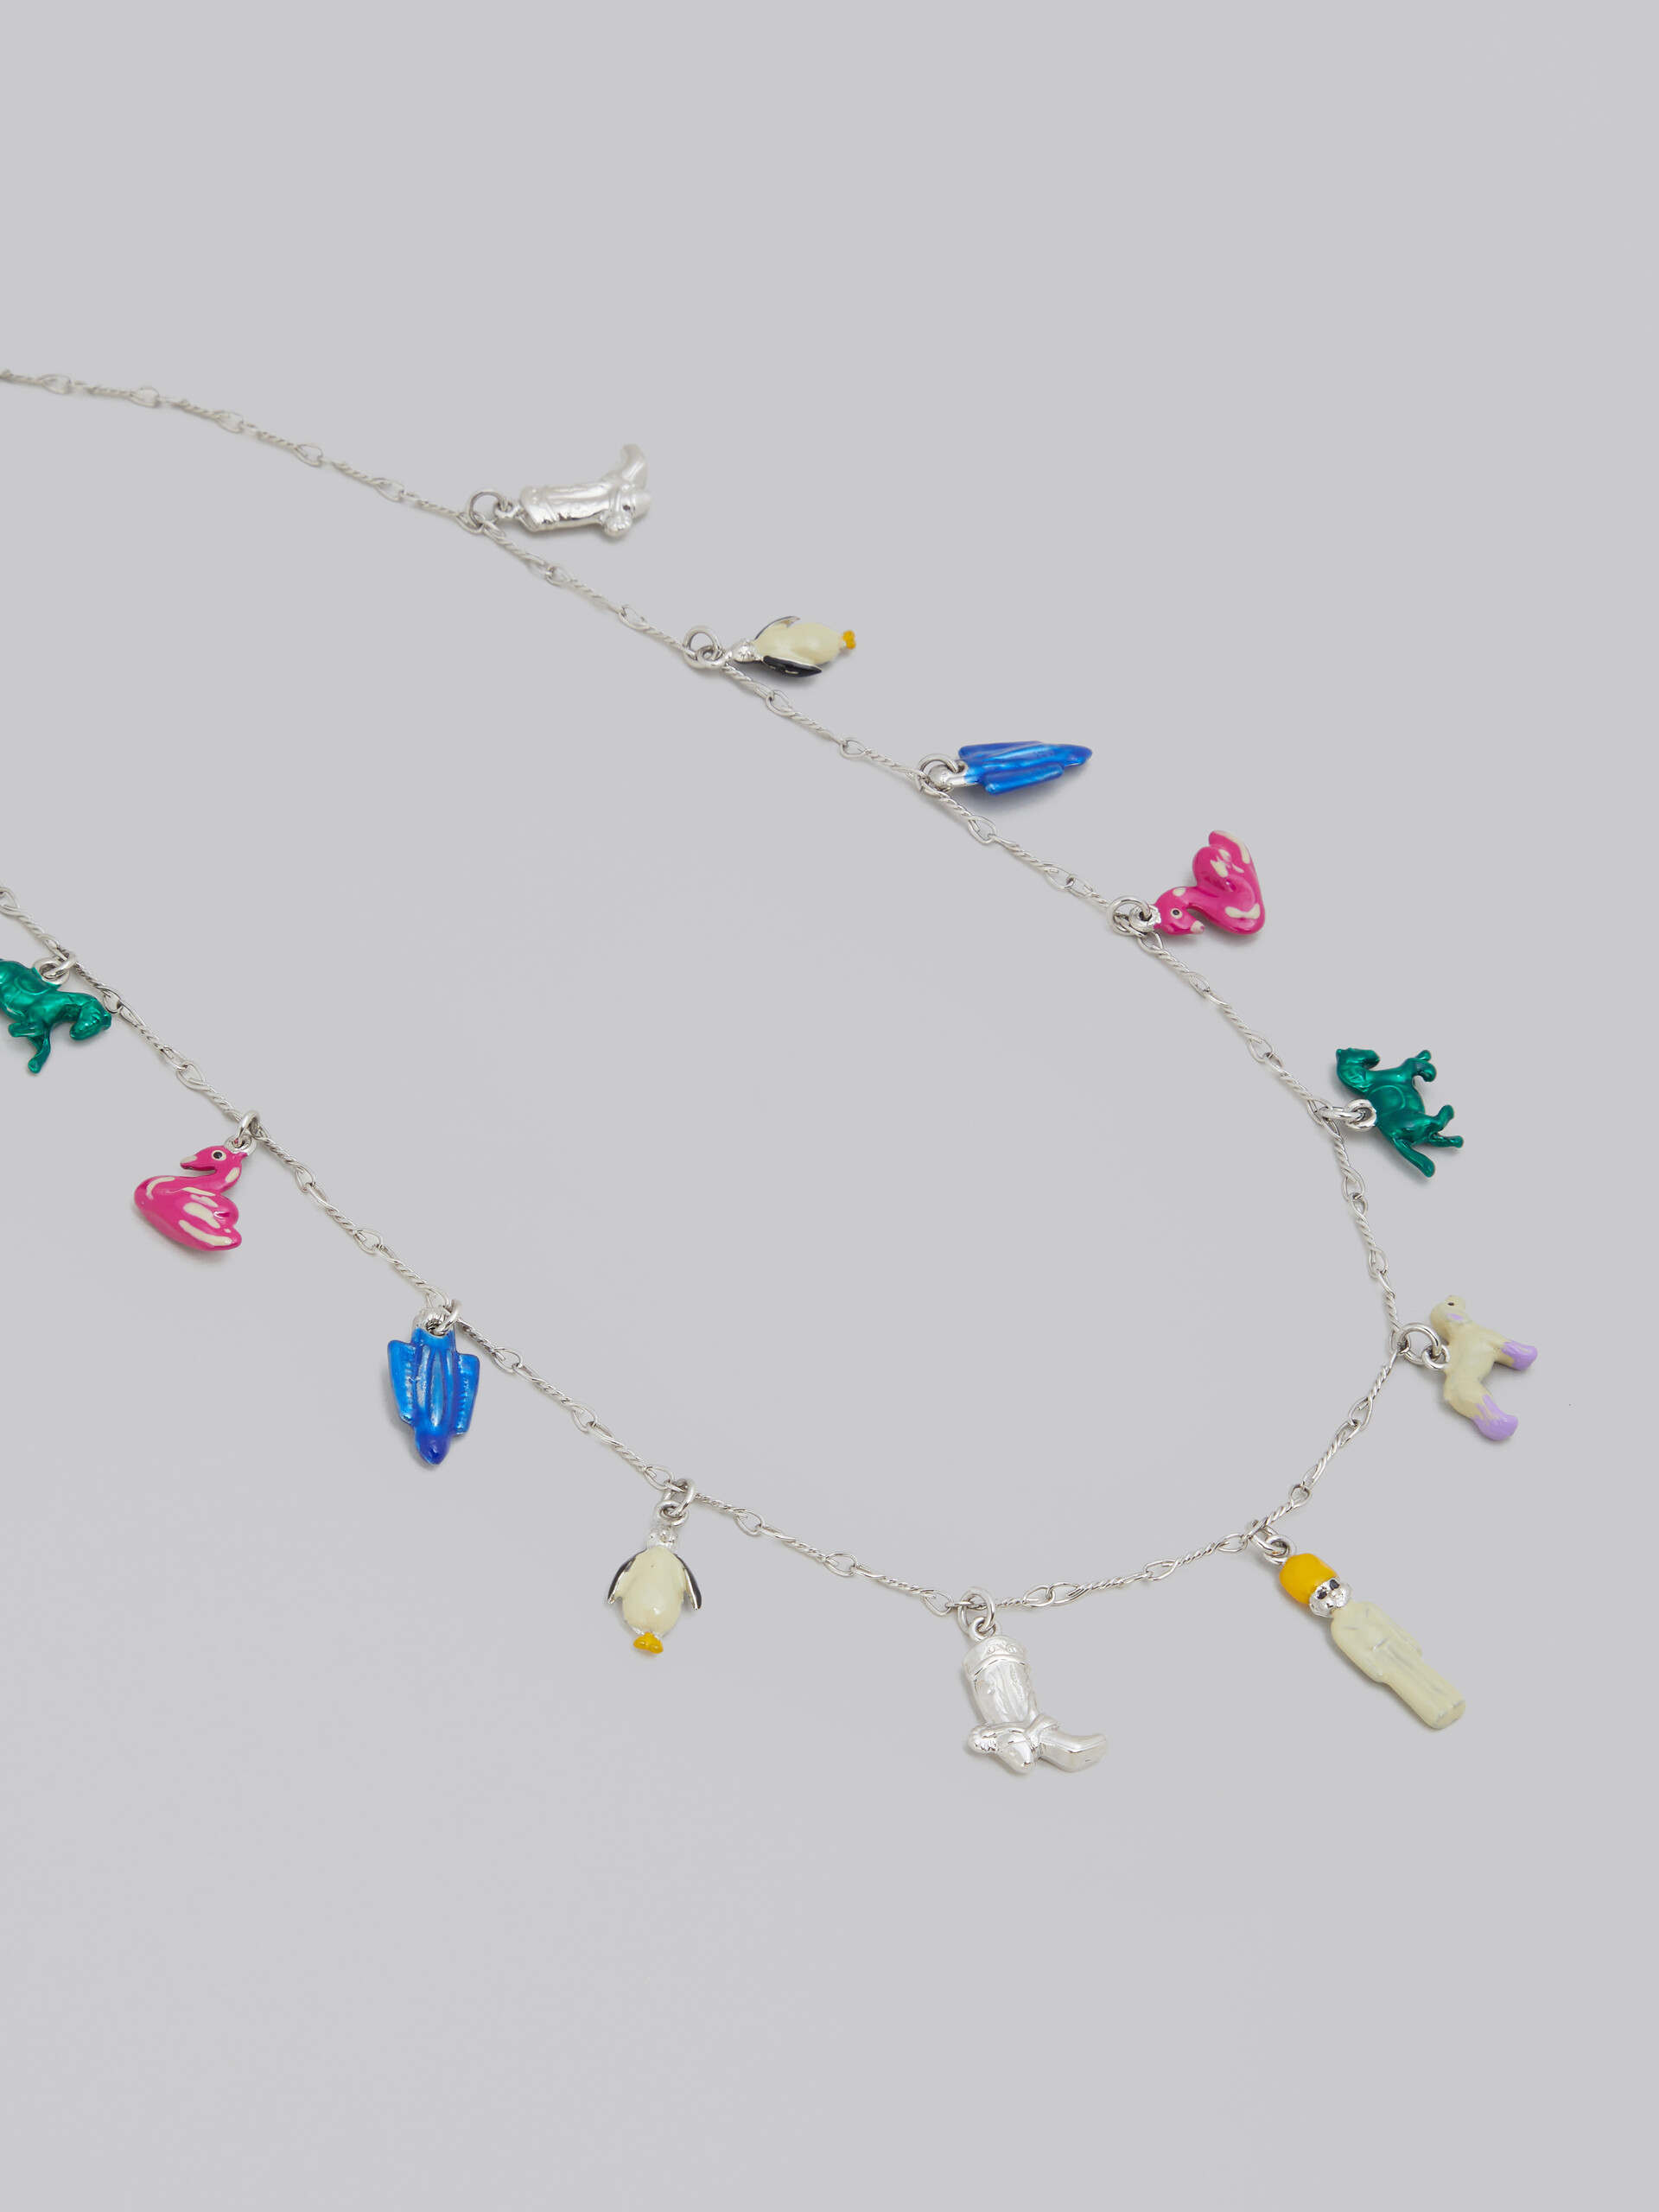 Collar de cadena de cuerda con charms innovadores - Collares - Image 3